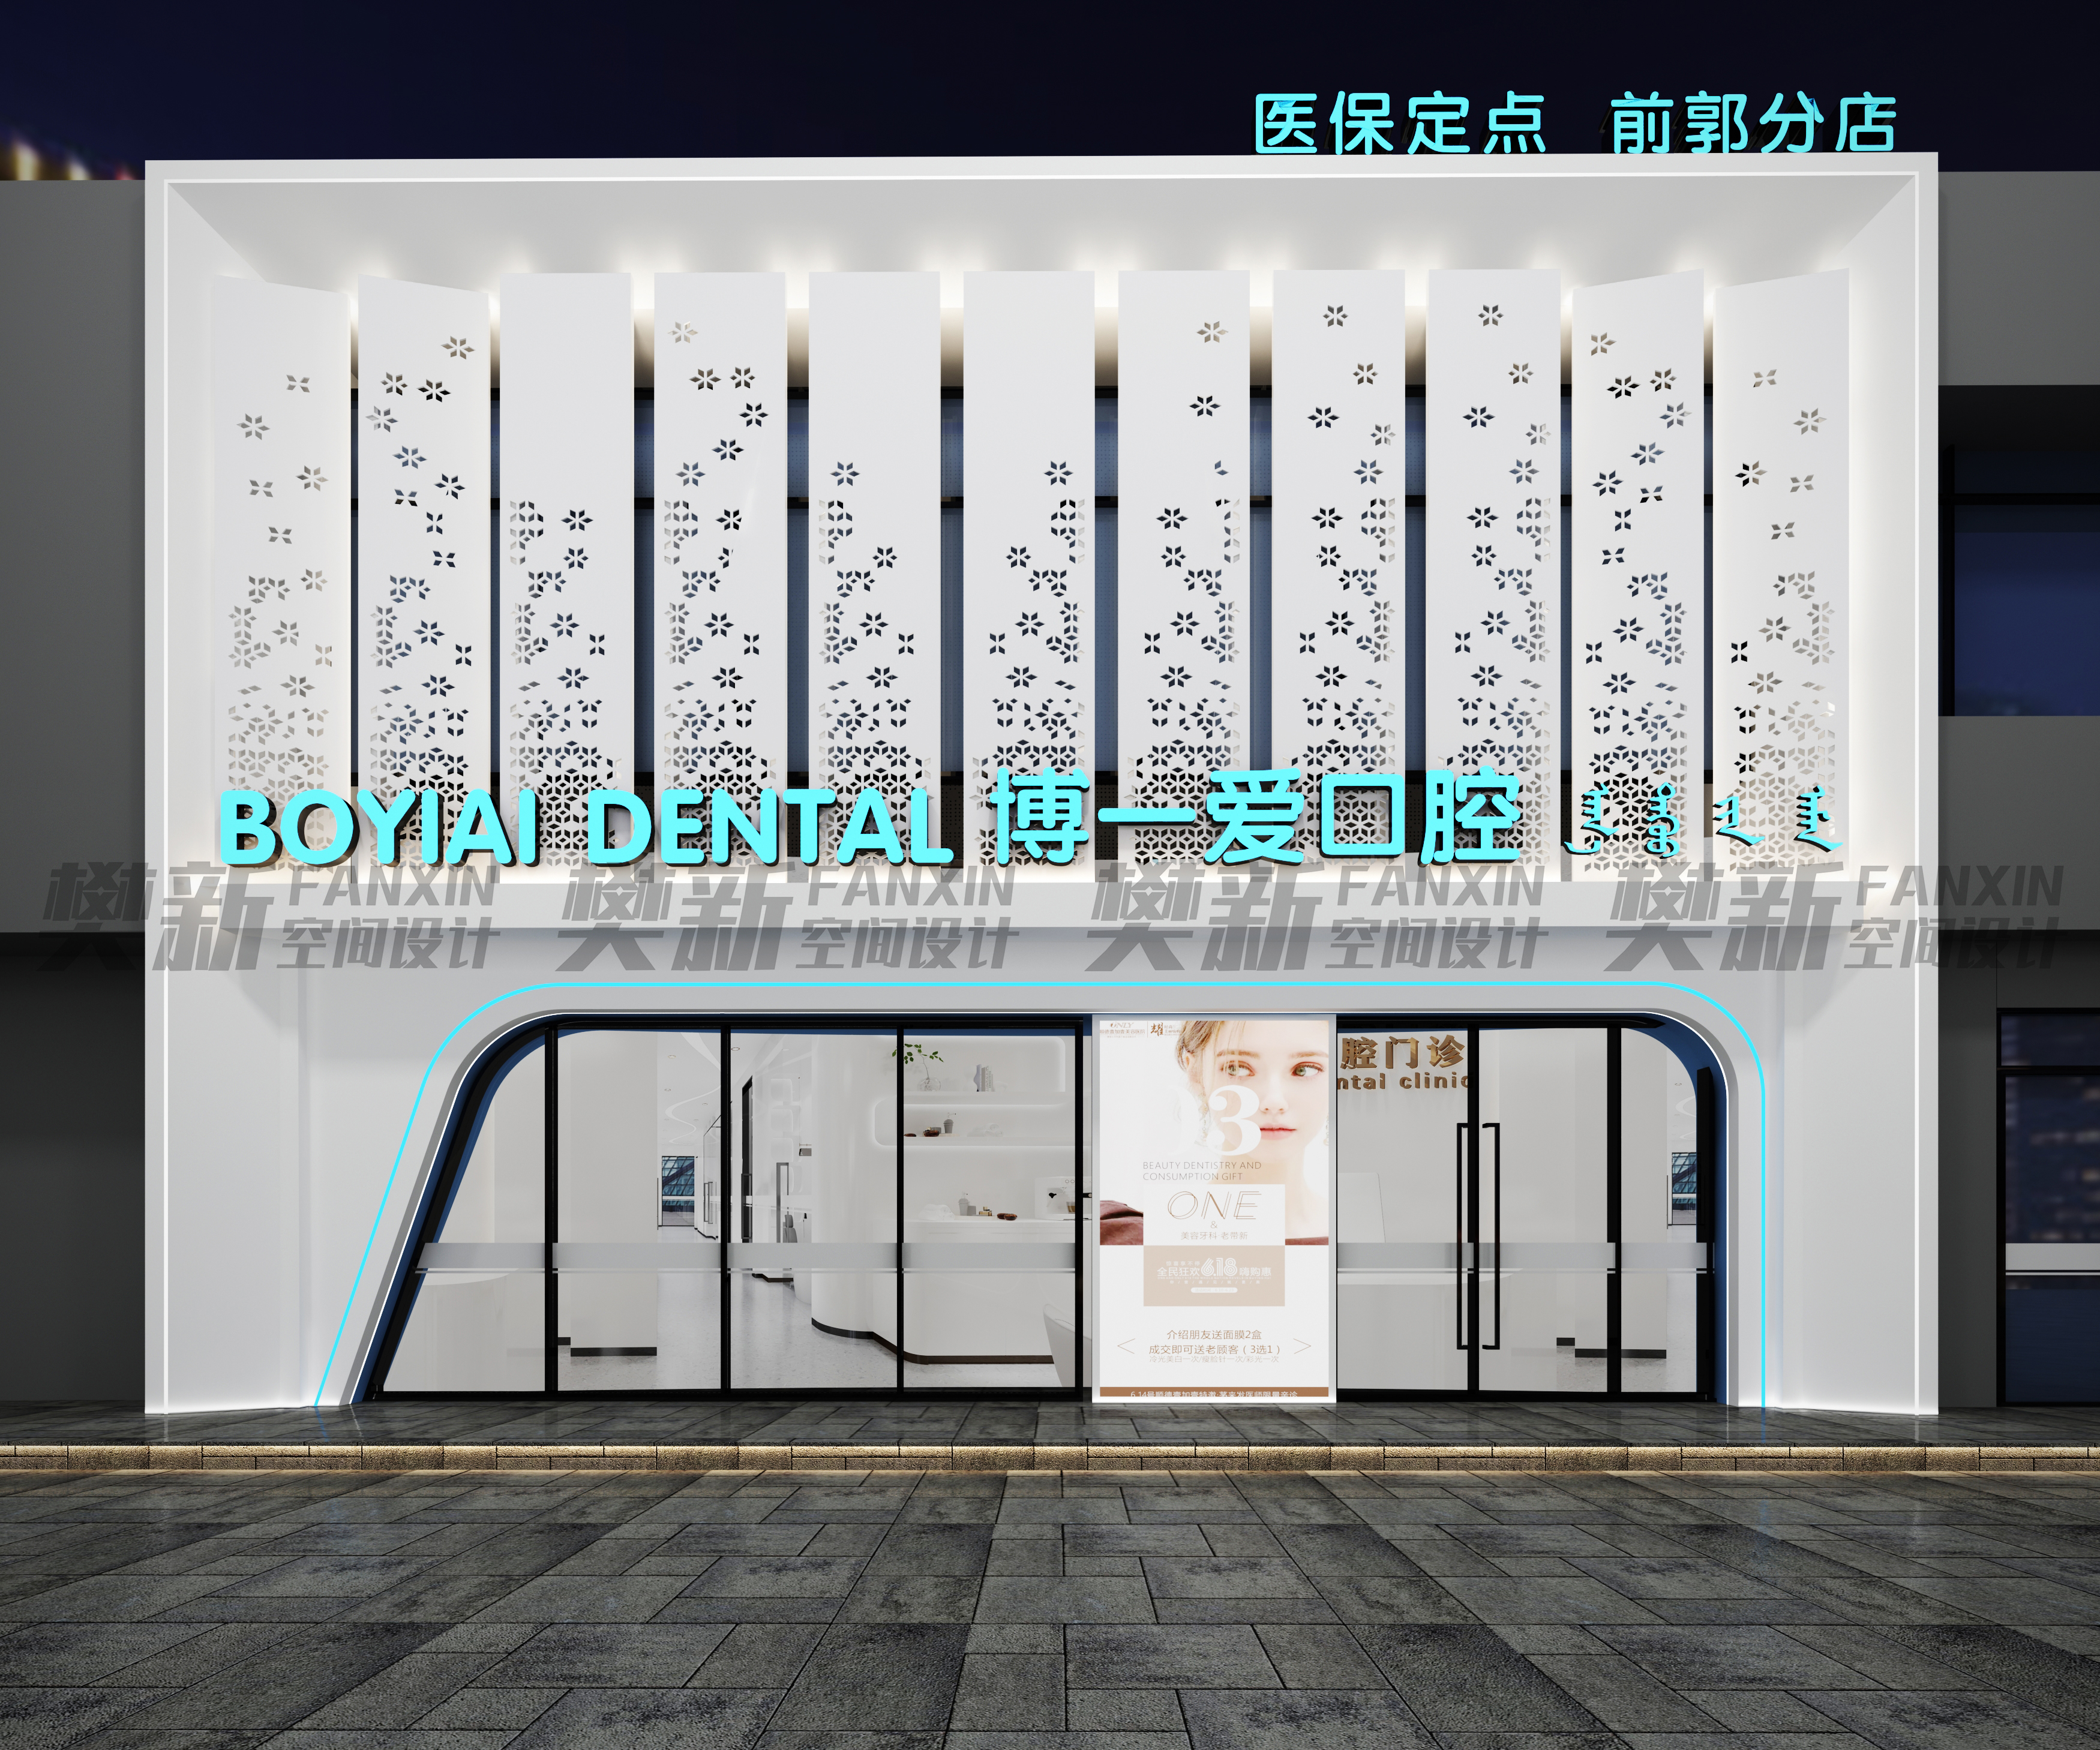 广州市牙科诊所门头依据什么设计?依据经营项目进行色彩搭配